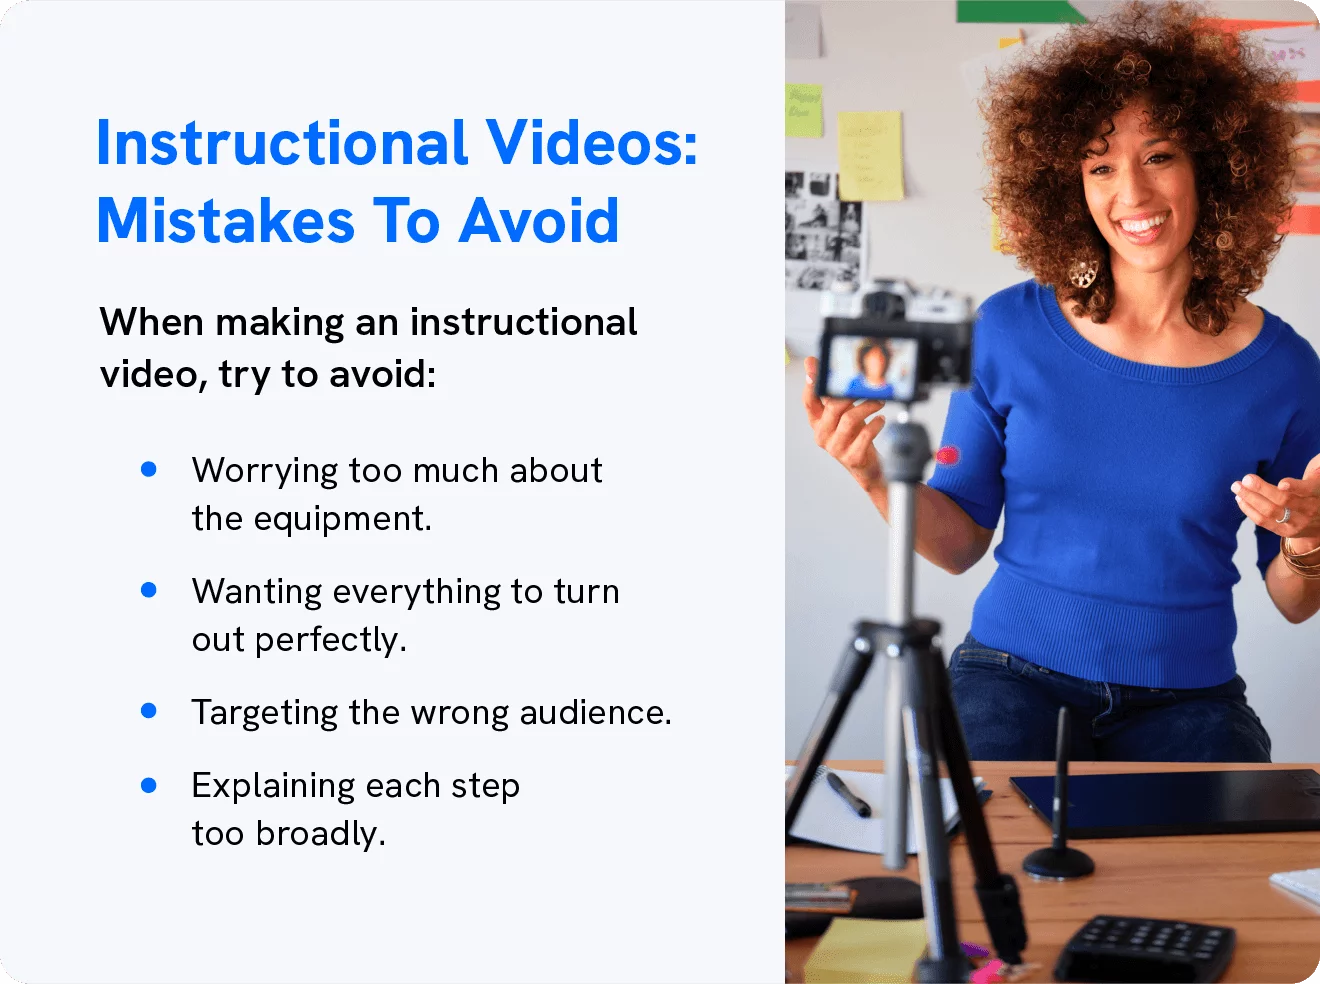 Eine Grafik zeigt Fehler, die bei der Erstellung von Lehrvideos zu vermeiden sind.